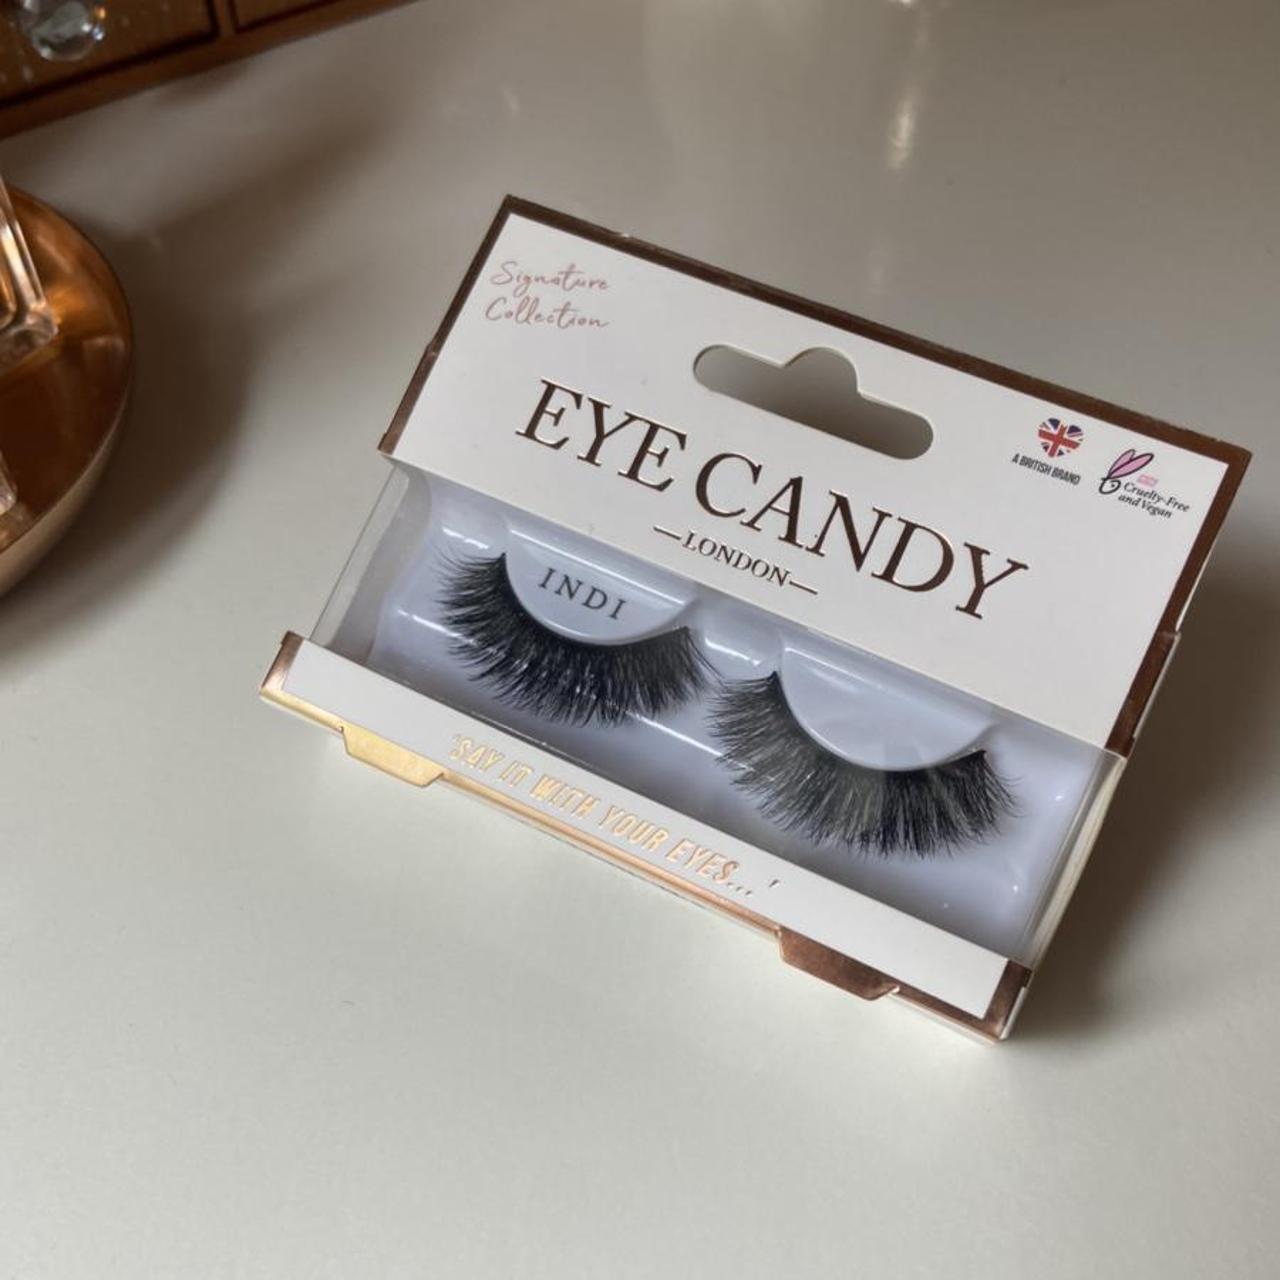 Product Image 1 - Eye candy false lashes🤍
Style indi